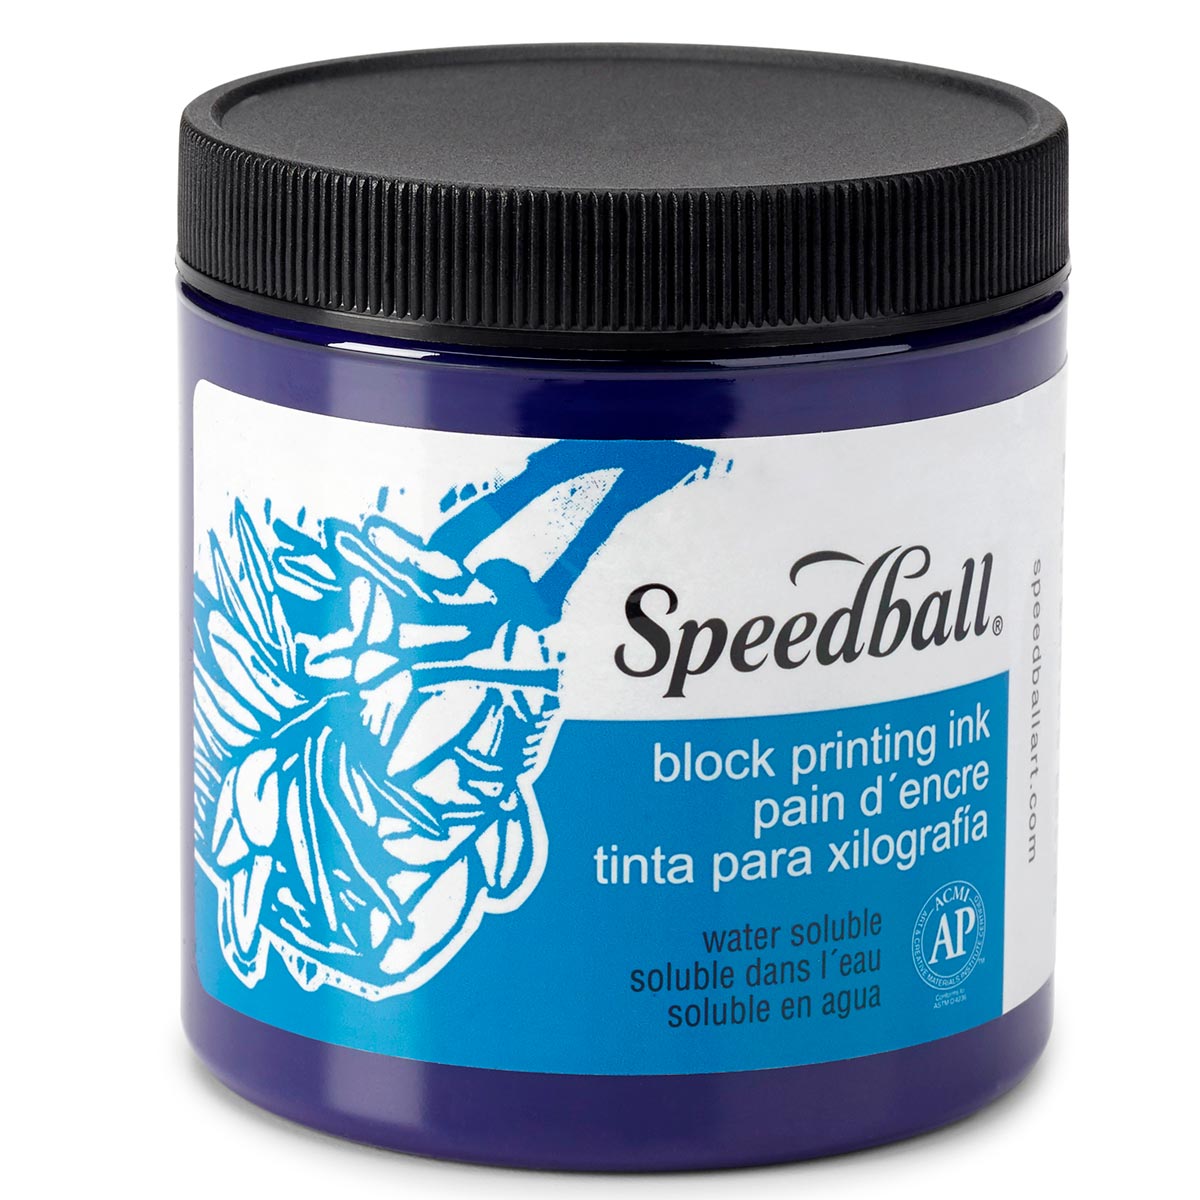 Speedball-Wasser lösliche Block-Tinte 236ml (8oz) -Violett